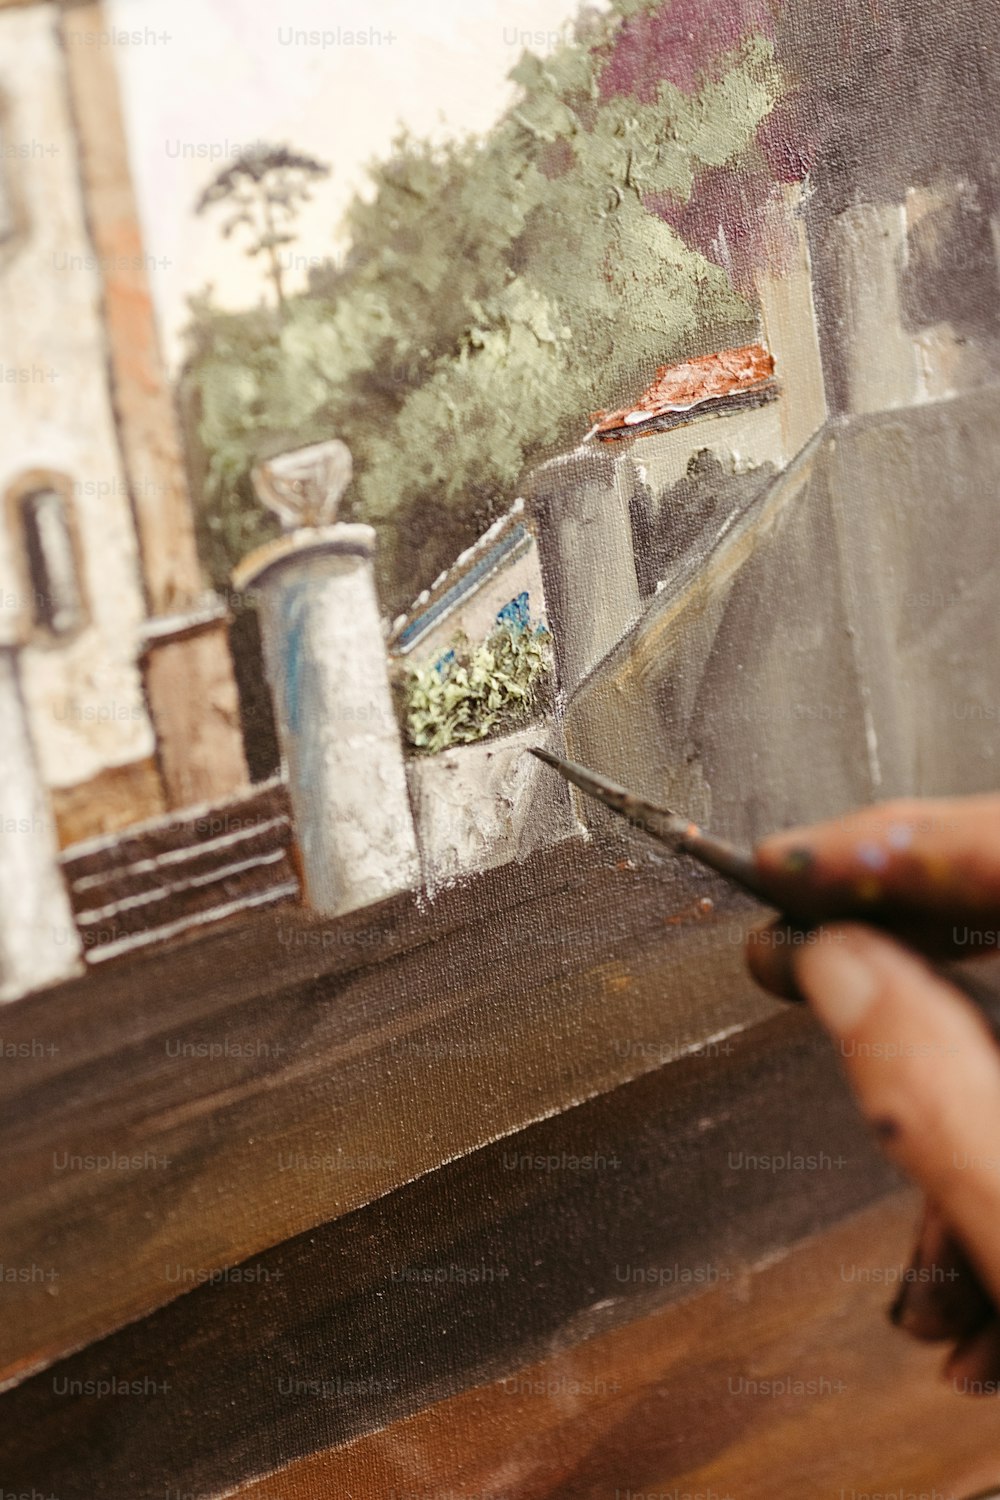 Una pintura de una persona sosteniendo un pincel